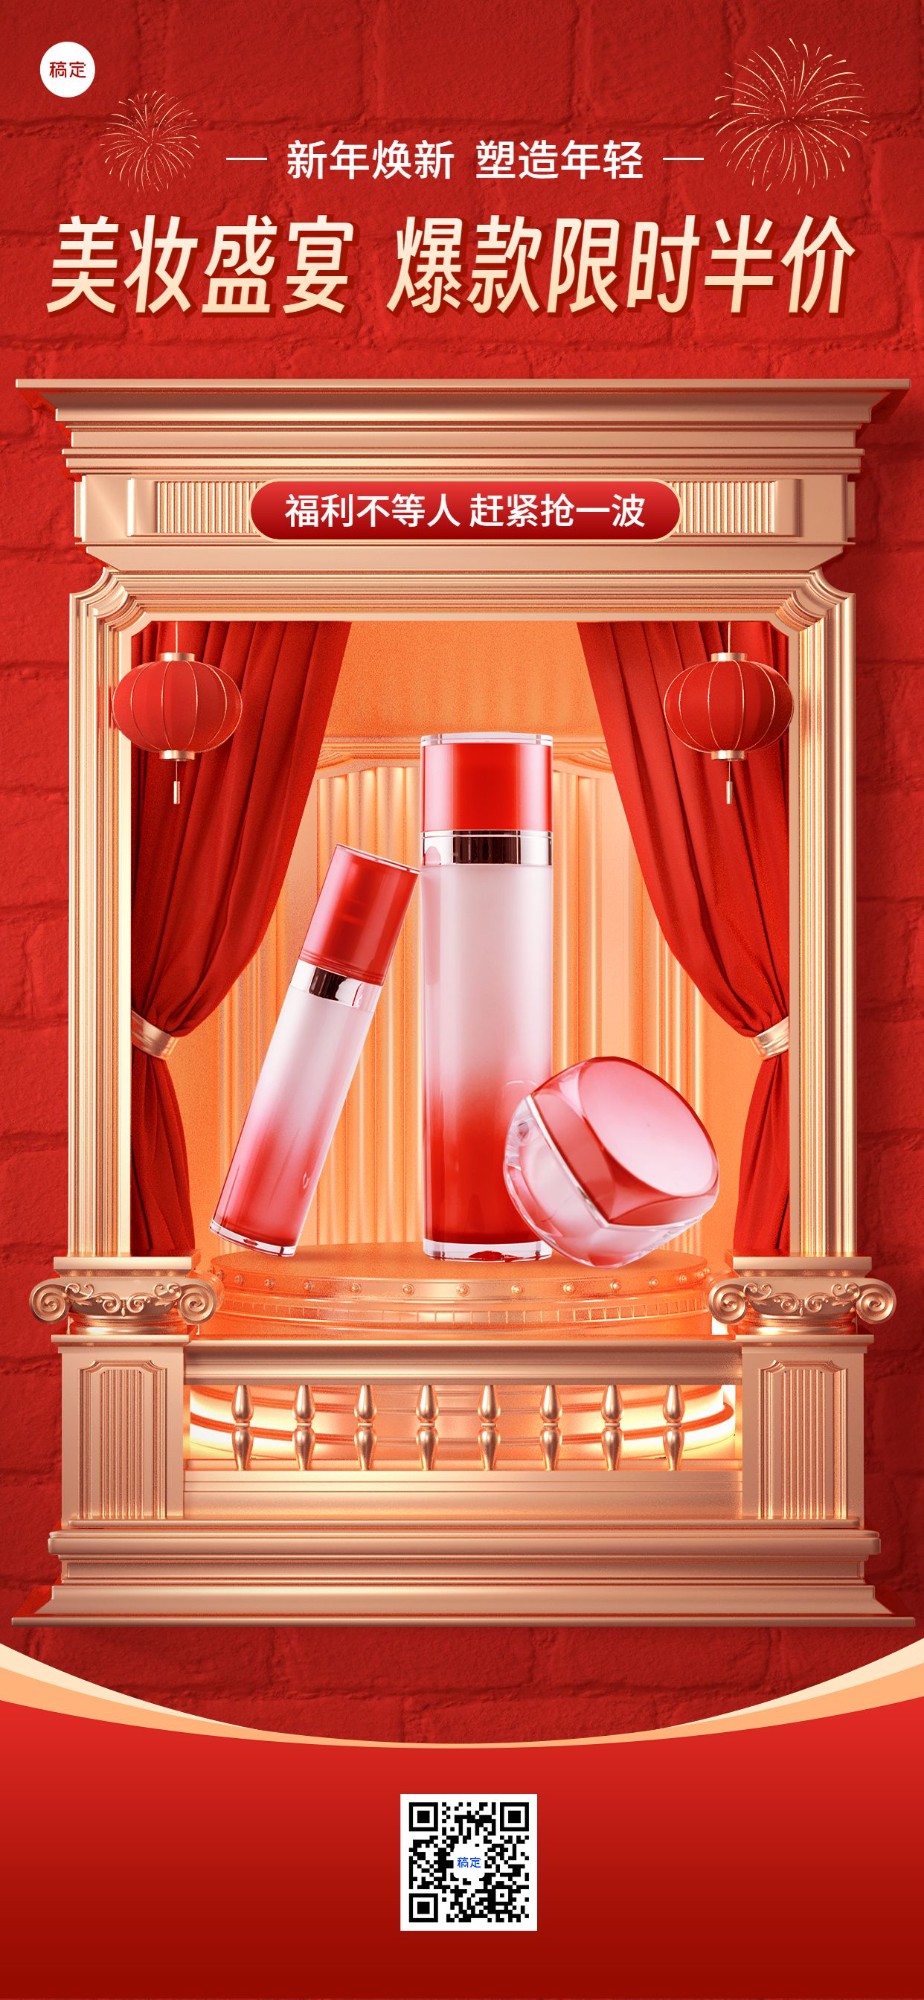 春节朋友圈运营美容美妆产品营销橱窗展示3d全屏竖版海报